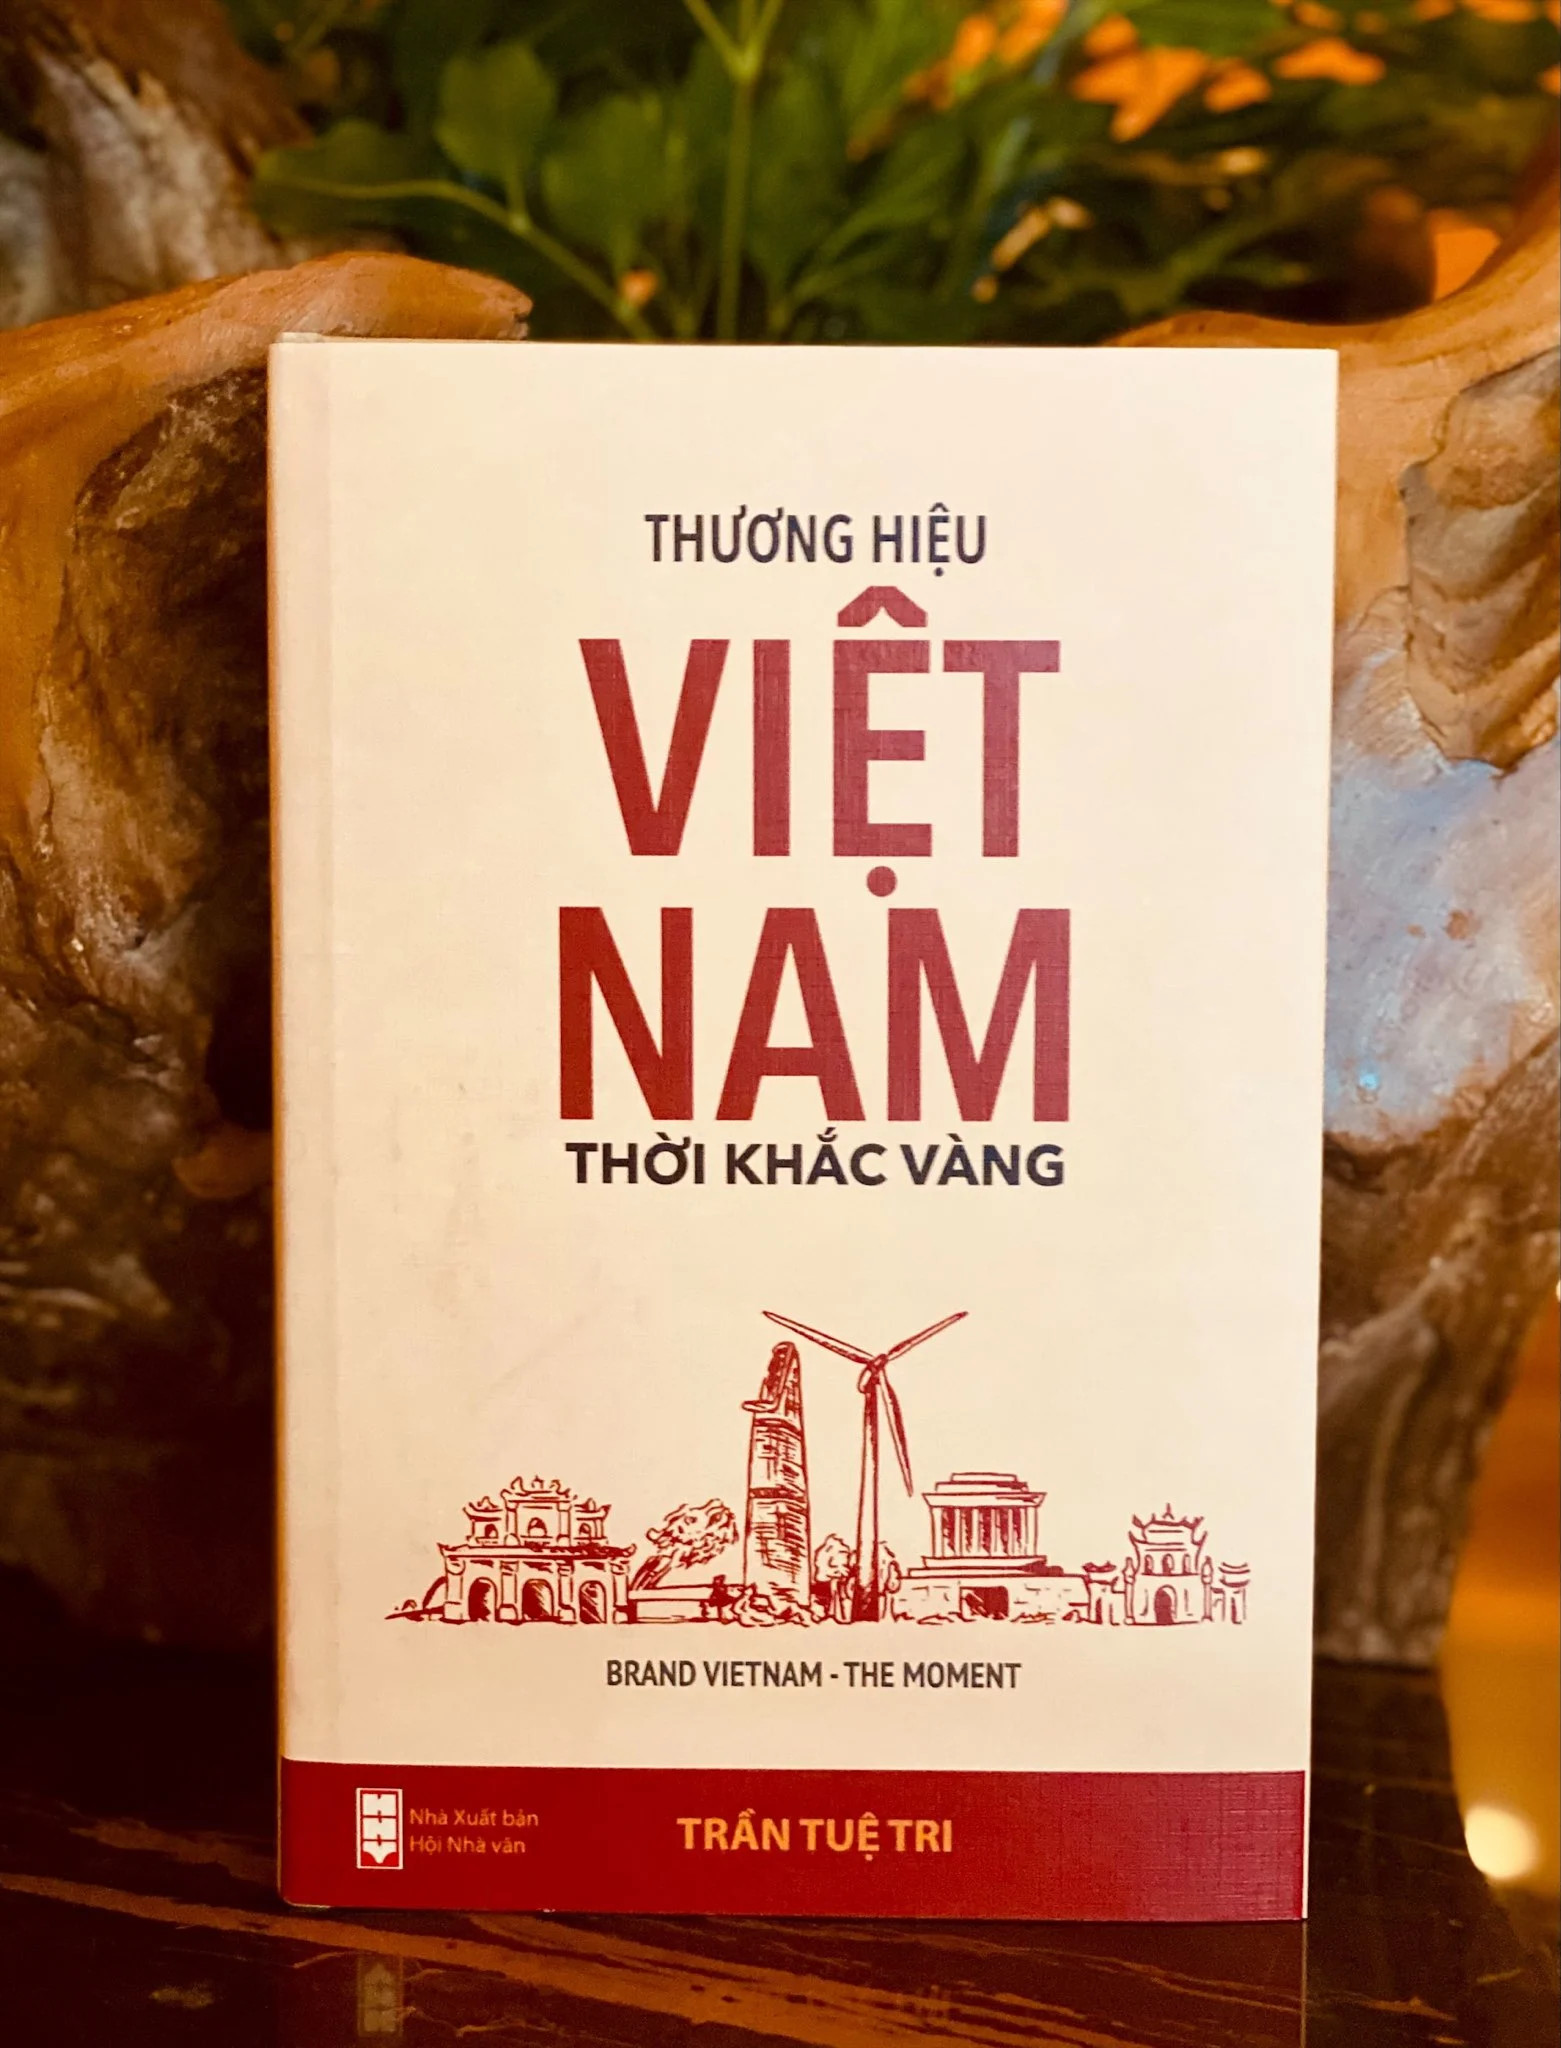 Thương hiệu Việt Nam - Thời khắc vàng (BRAND VIETNAM THE MOMENT) - Trần Tuệ Tri - (bìa mềm)